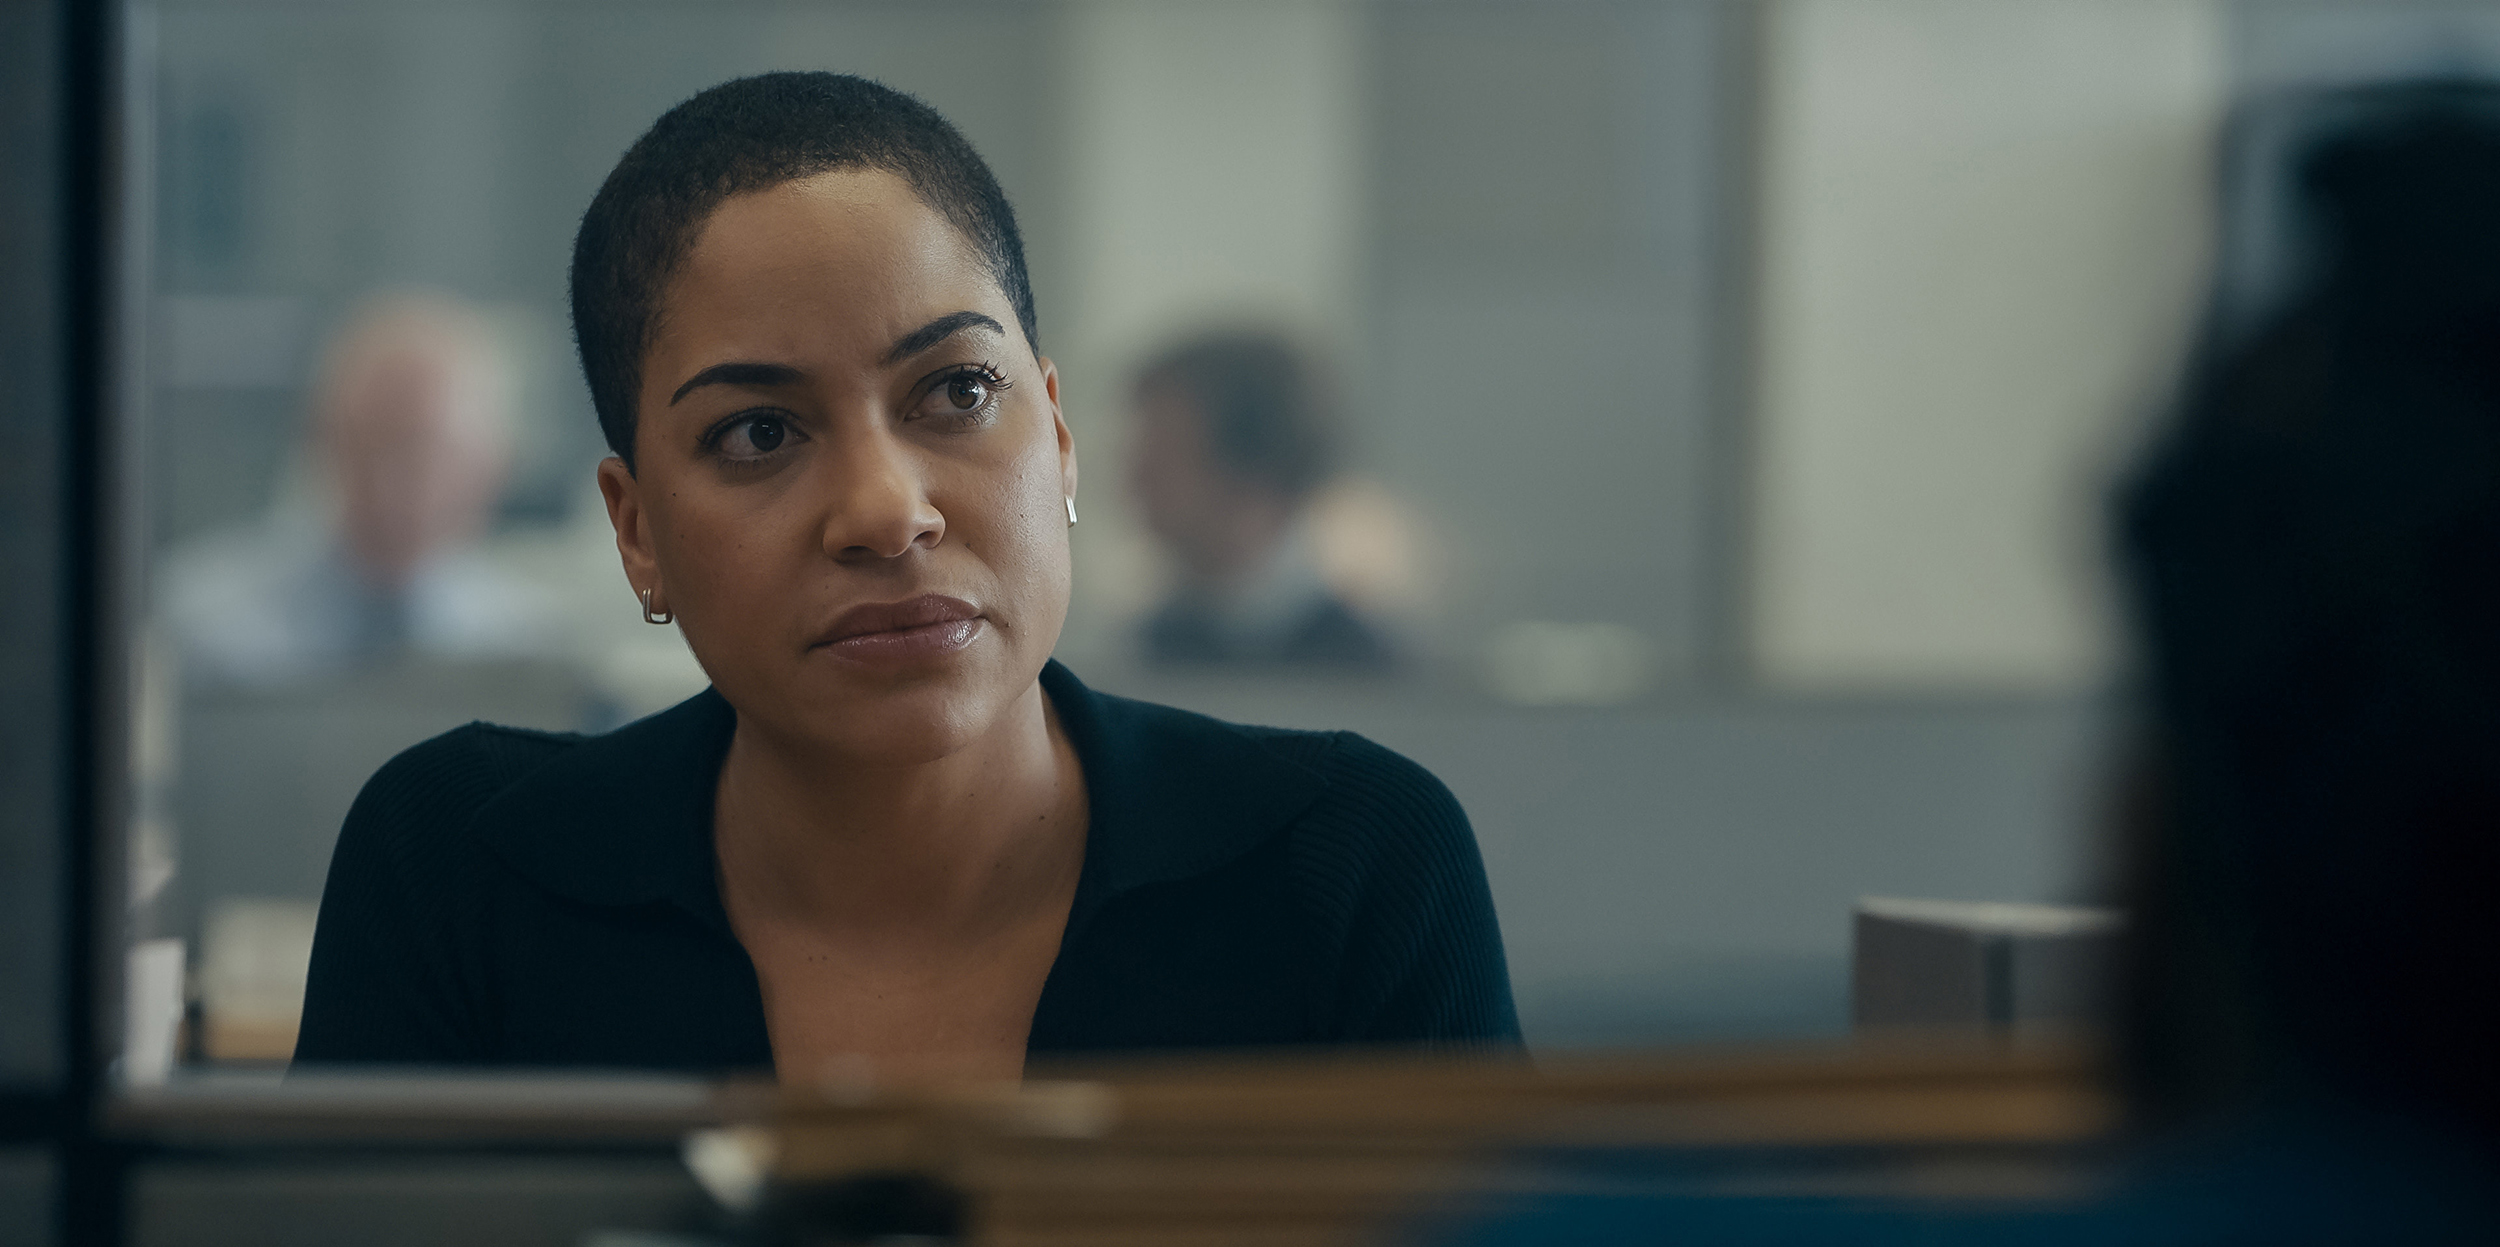 Cush Jumbo as Detective Sergeant June Lenker at her desk in 'Criminal Record' Season 1